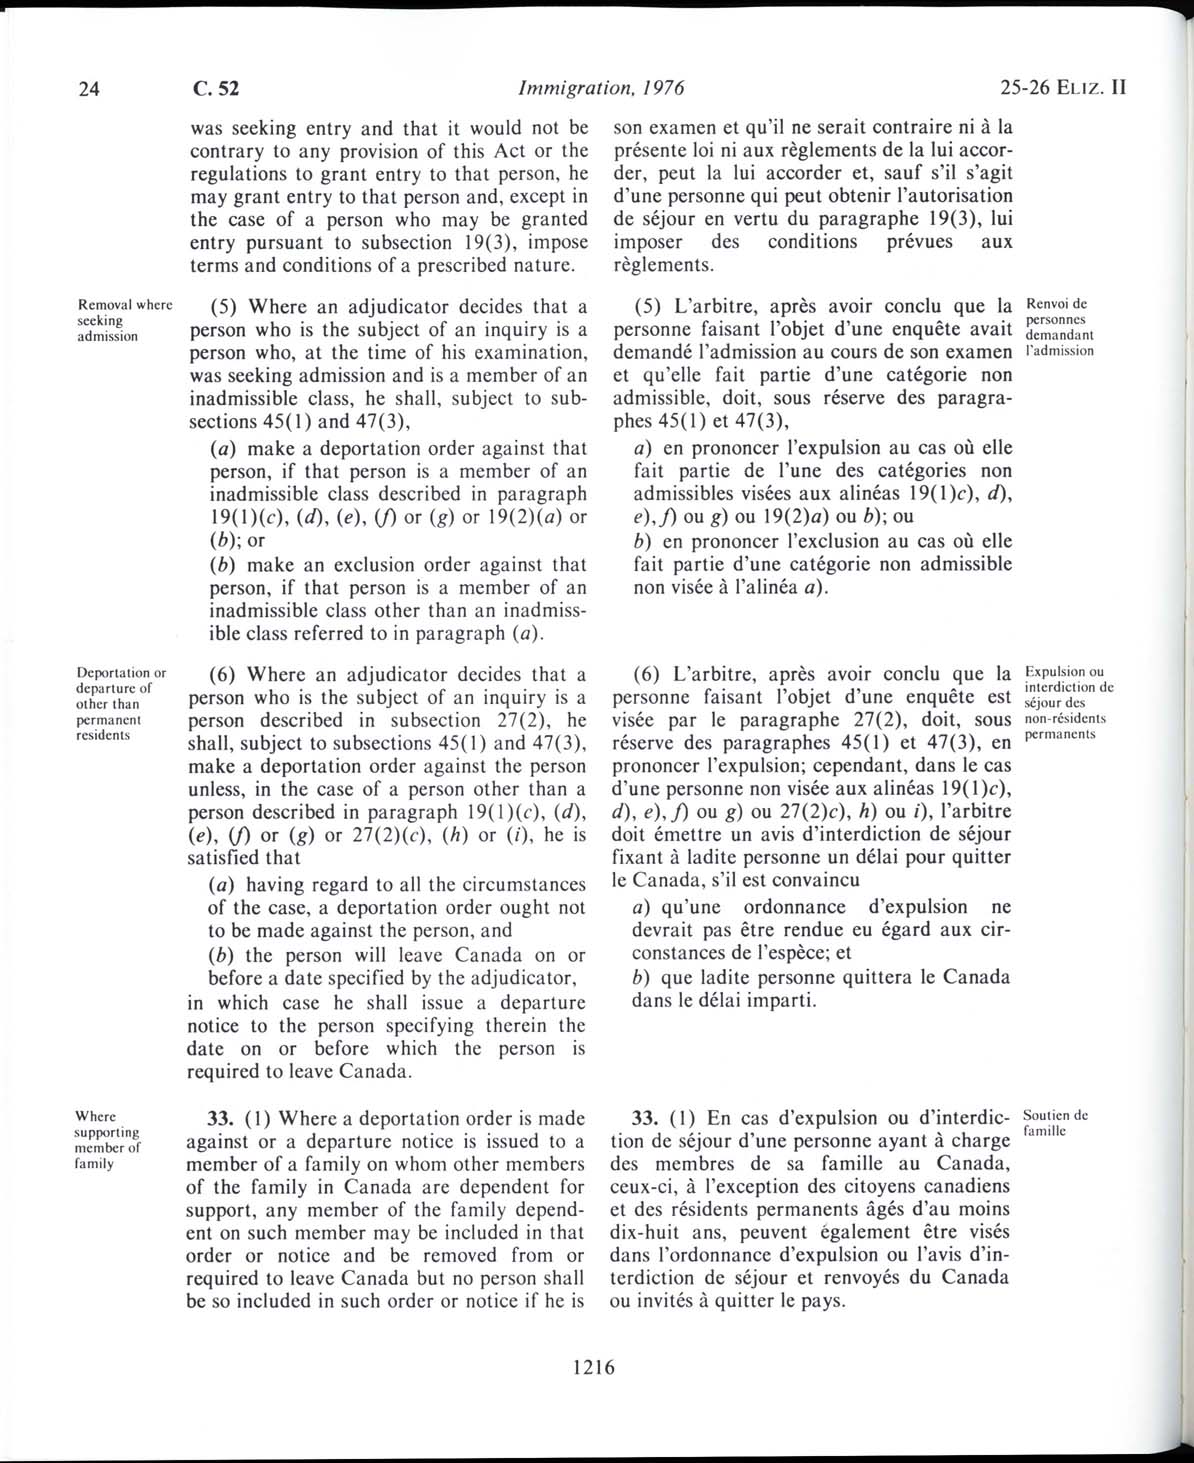 Page 1216 Loi sur l’immigration de 1976